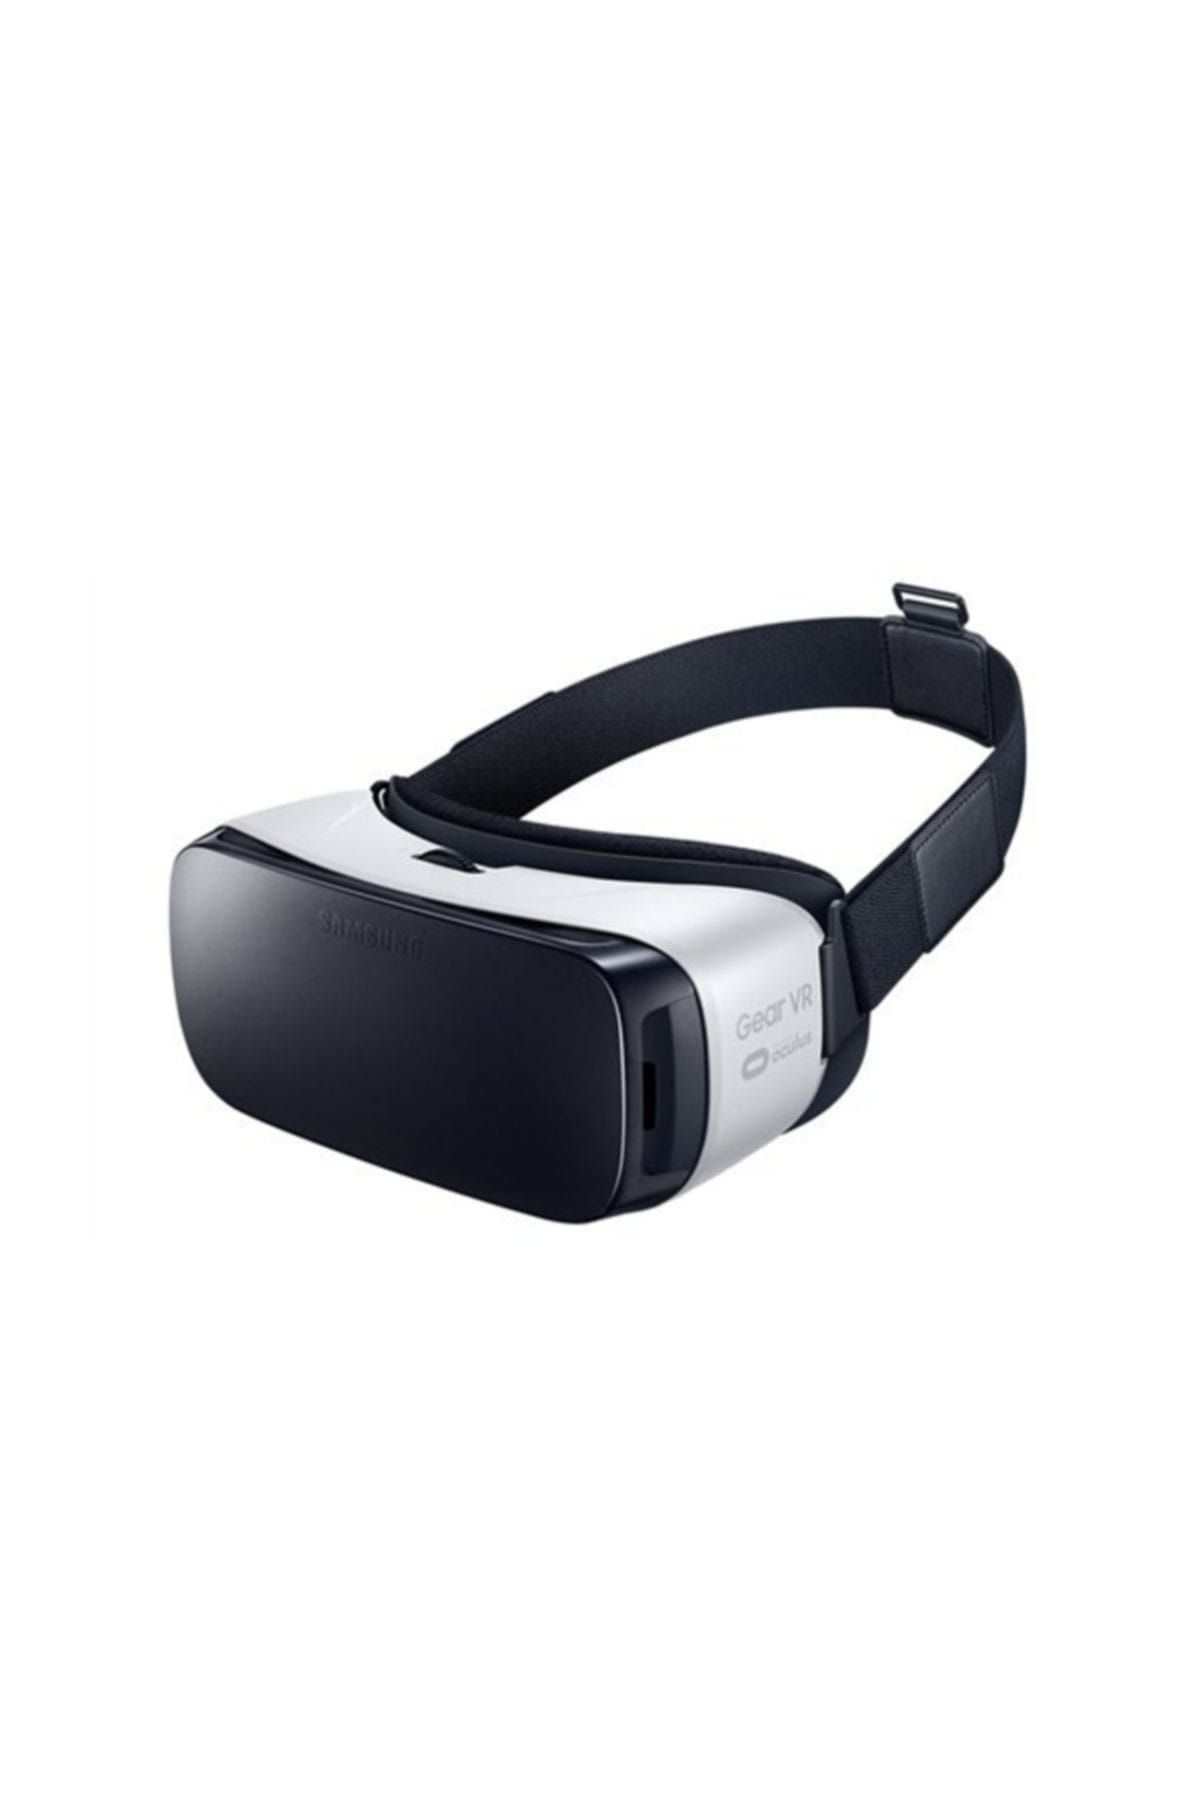 Samsung Gear VR (R322) Sanal Gerçeklik Gözlüğü